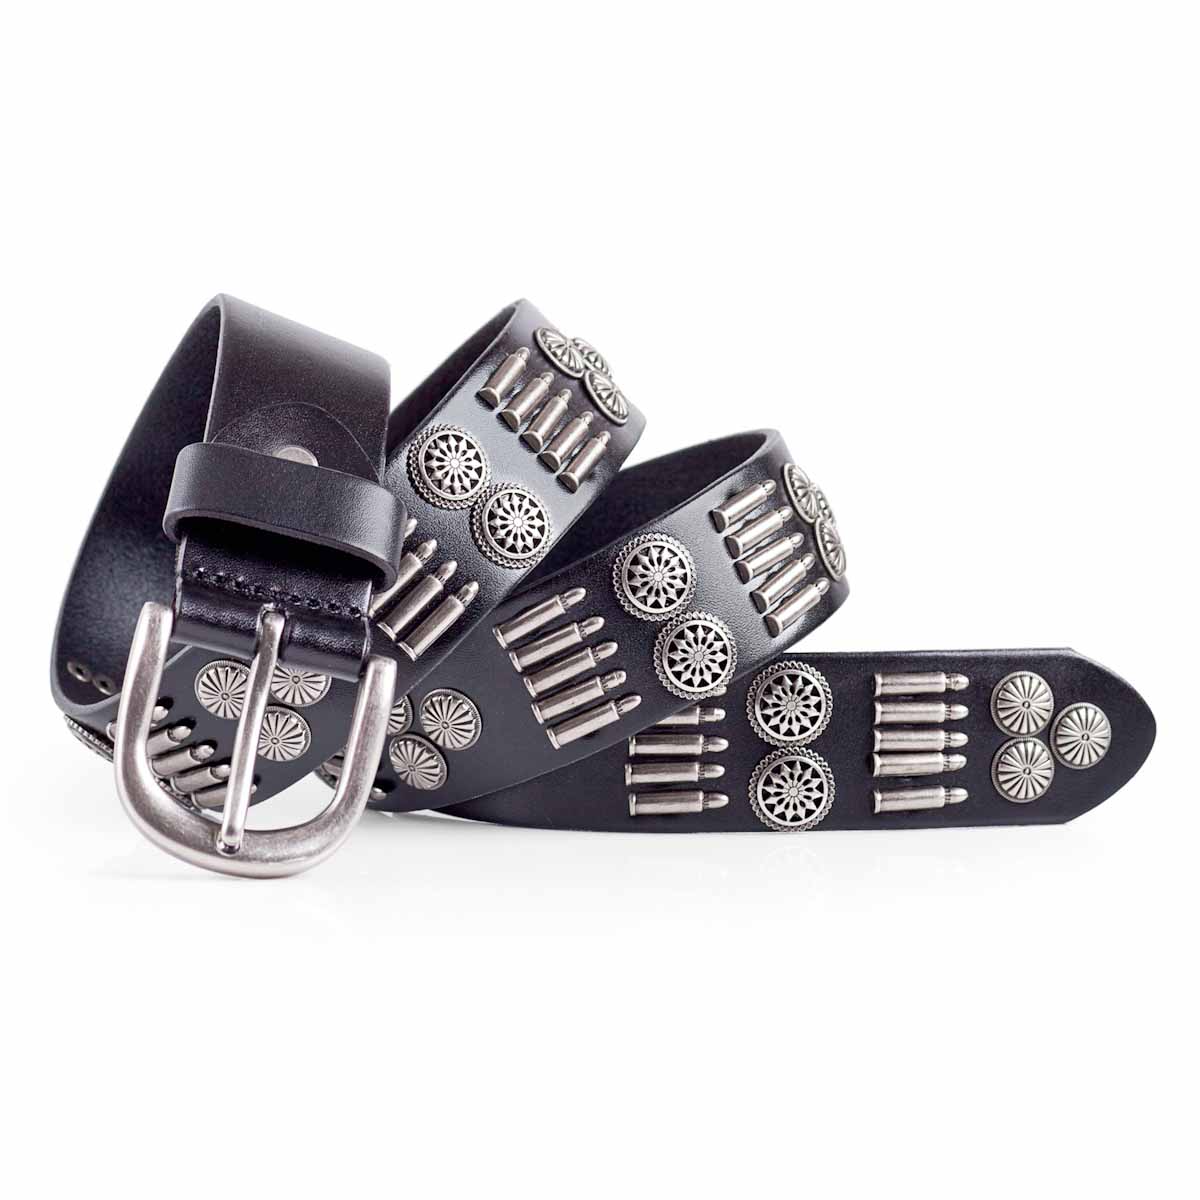 mens leather studded belt